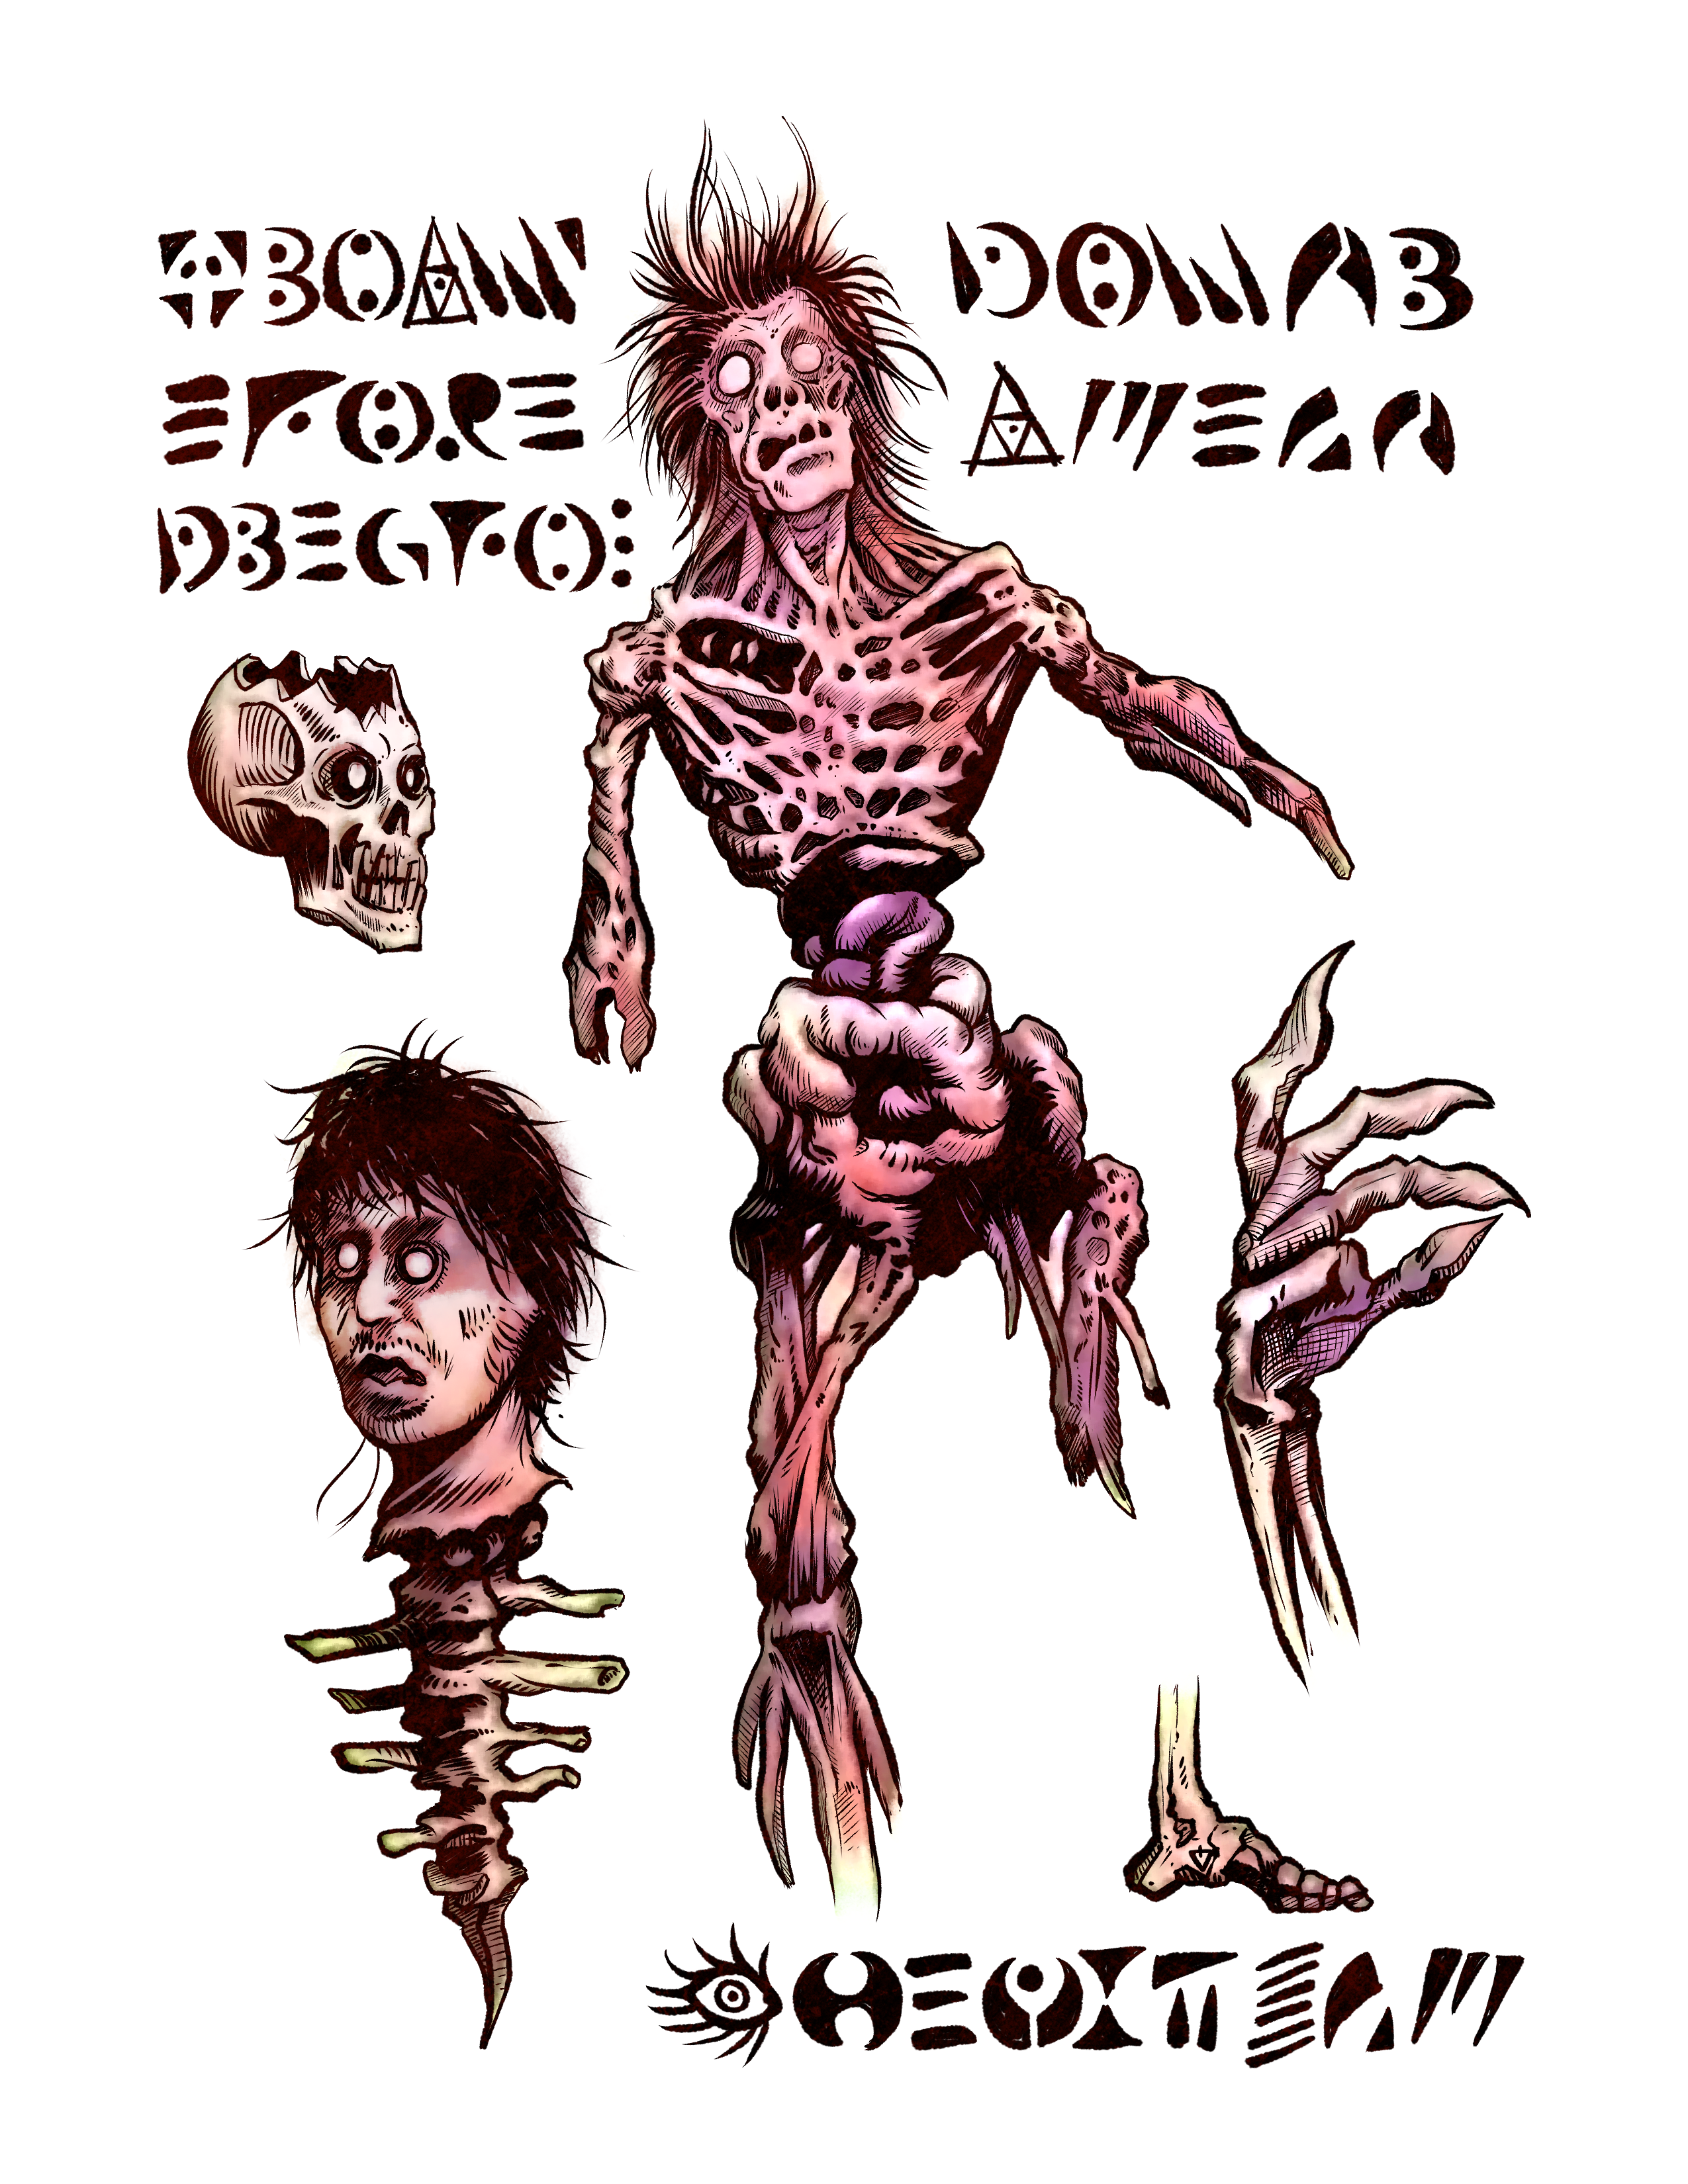 Evil Dead 2 Rise Book of the Dead Necronomicon Replica Prop Figure Latex  Cover